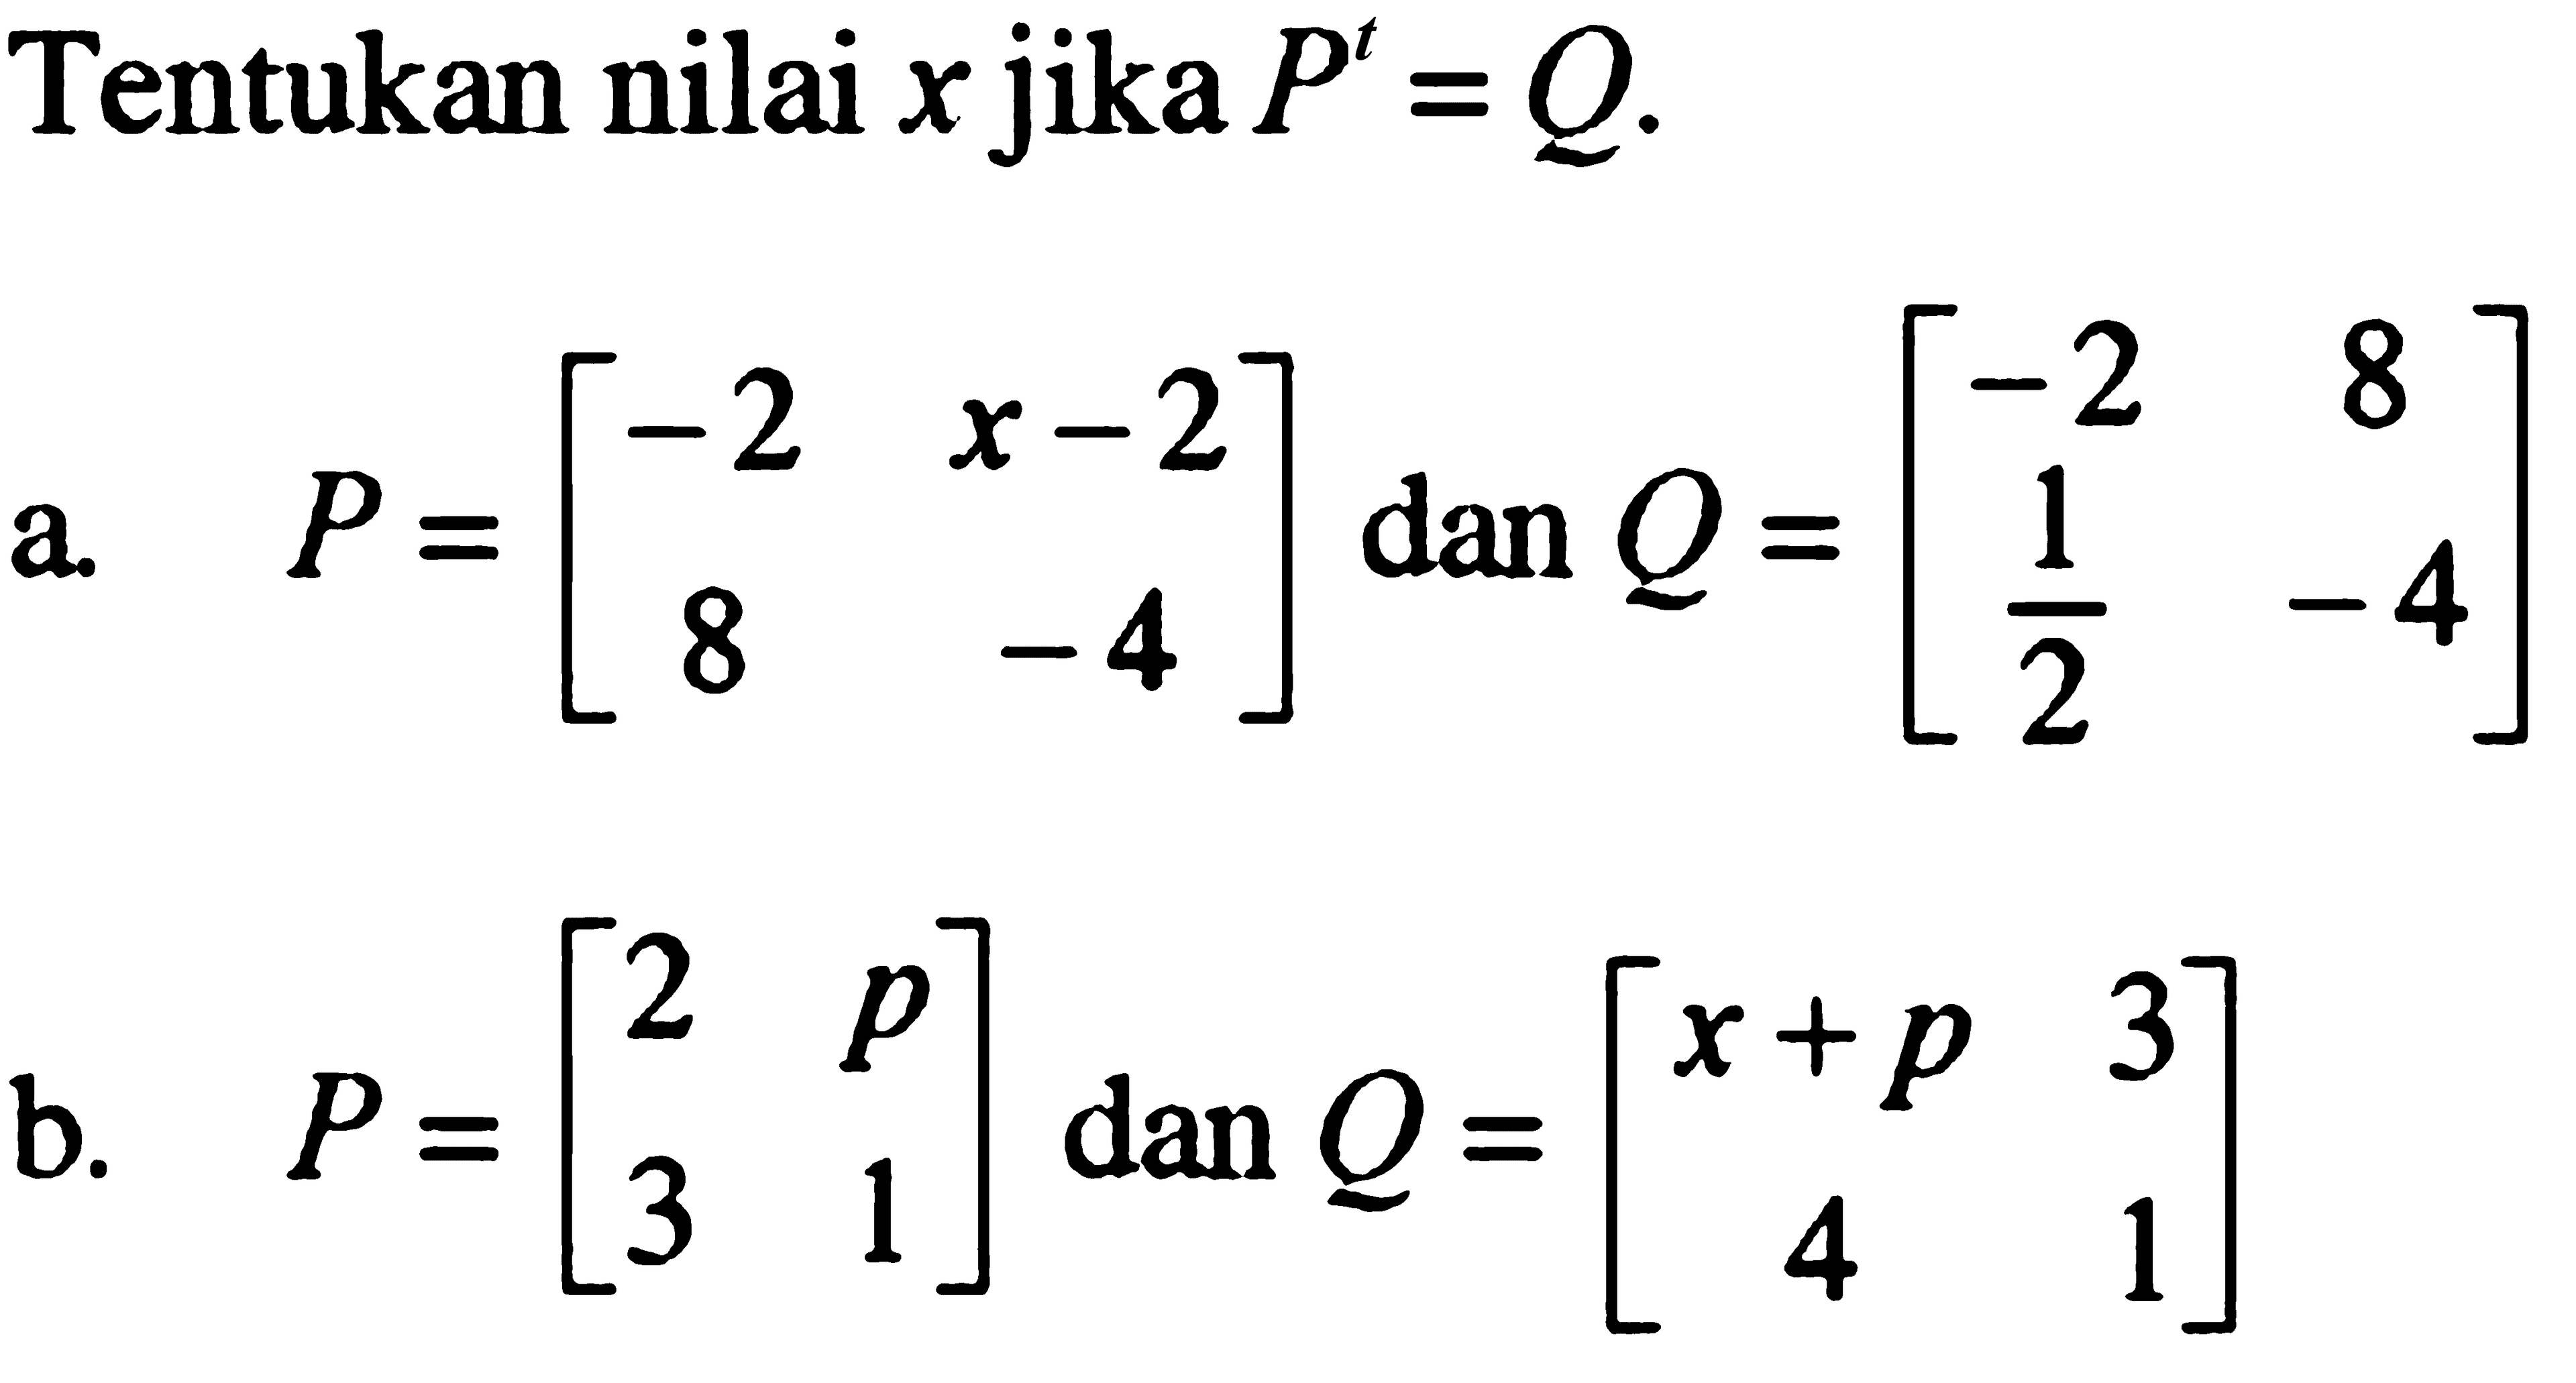 Tentukan nilai x jika P^t=Q. a. P=[-2 x-2 8 -4] dan Q=[-2 8 1/2 -4] b. P=[2 p 3 1] dan Q=[x+p 3 4 1]